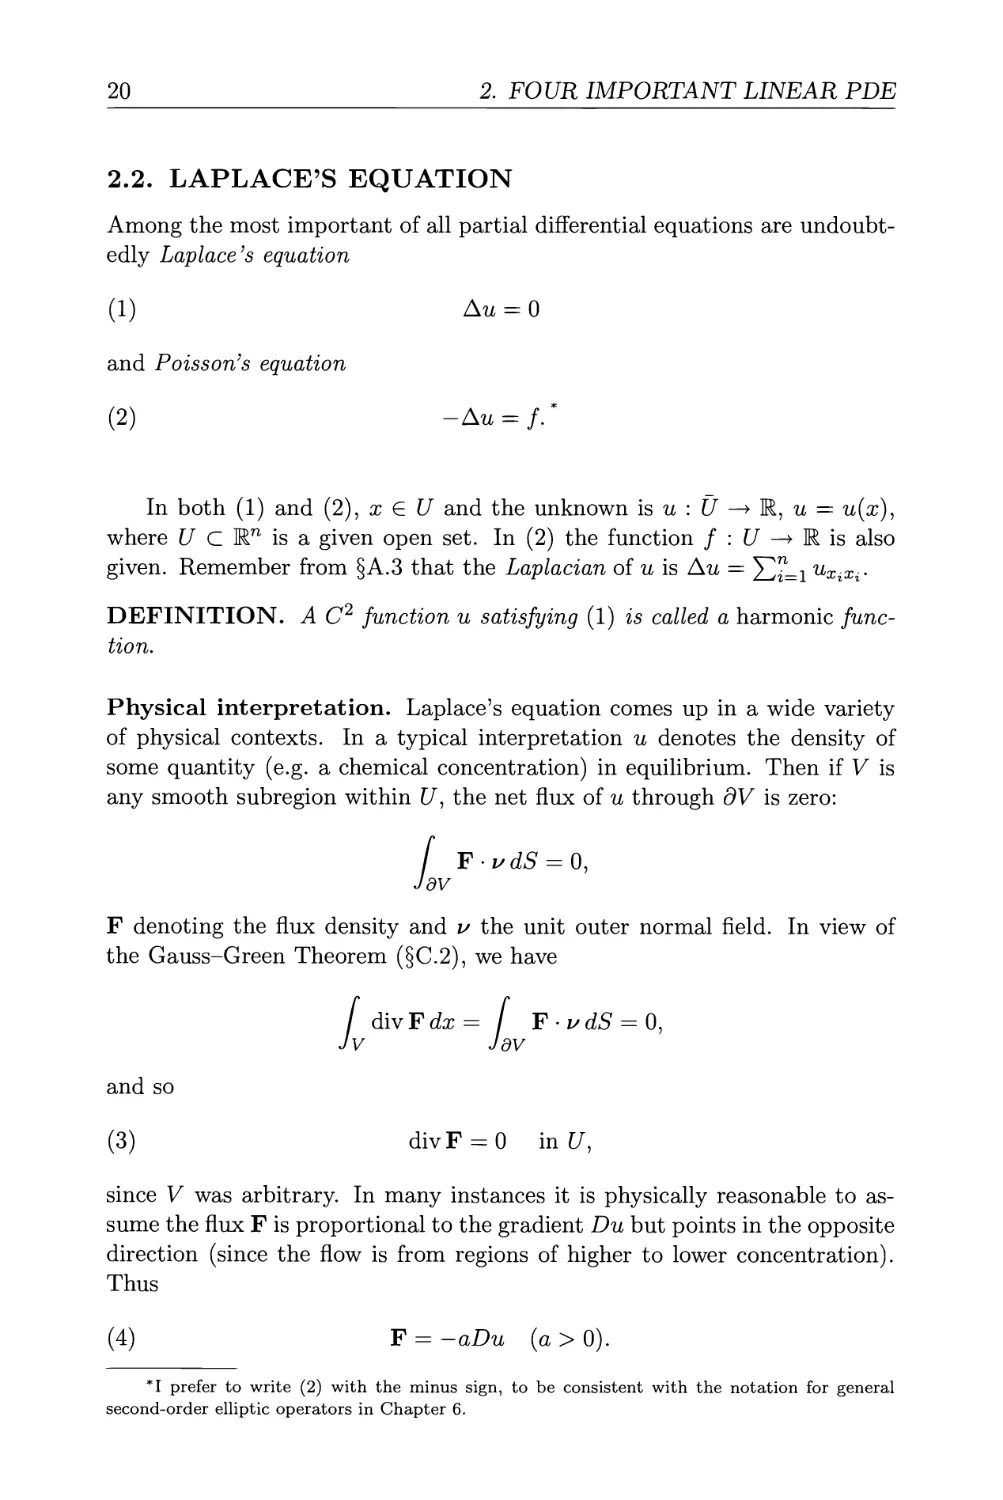 2.2. Laplace's equation